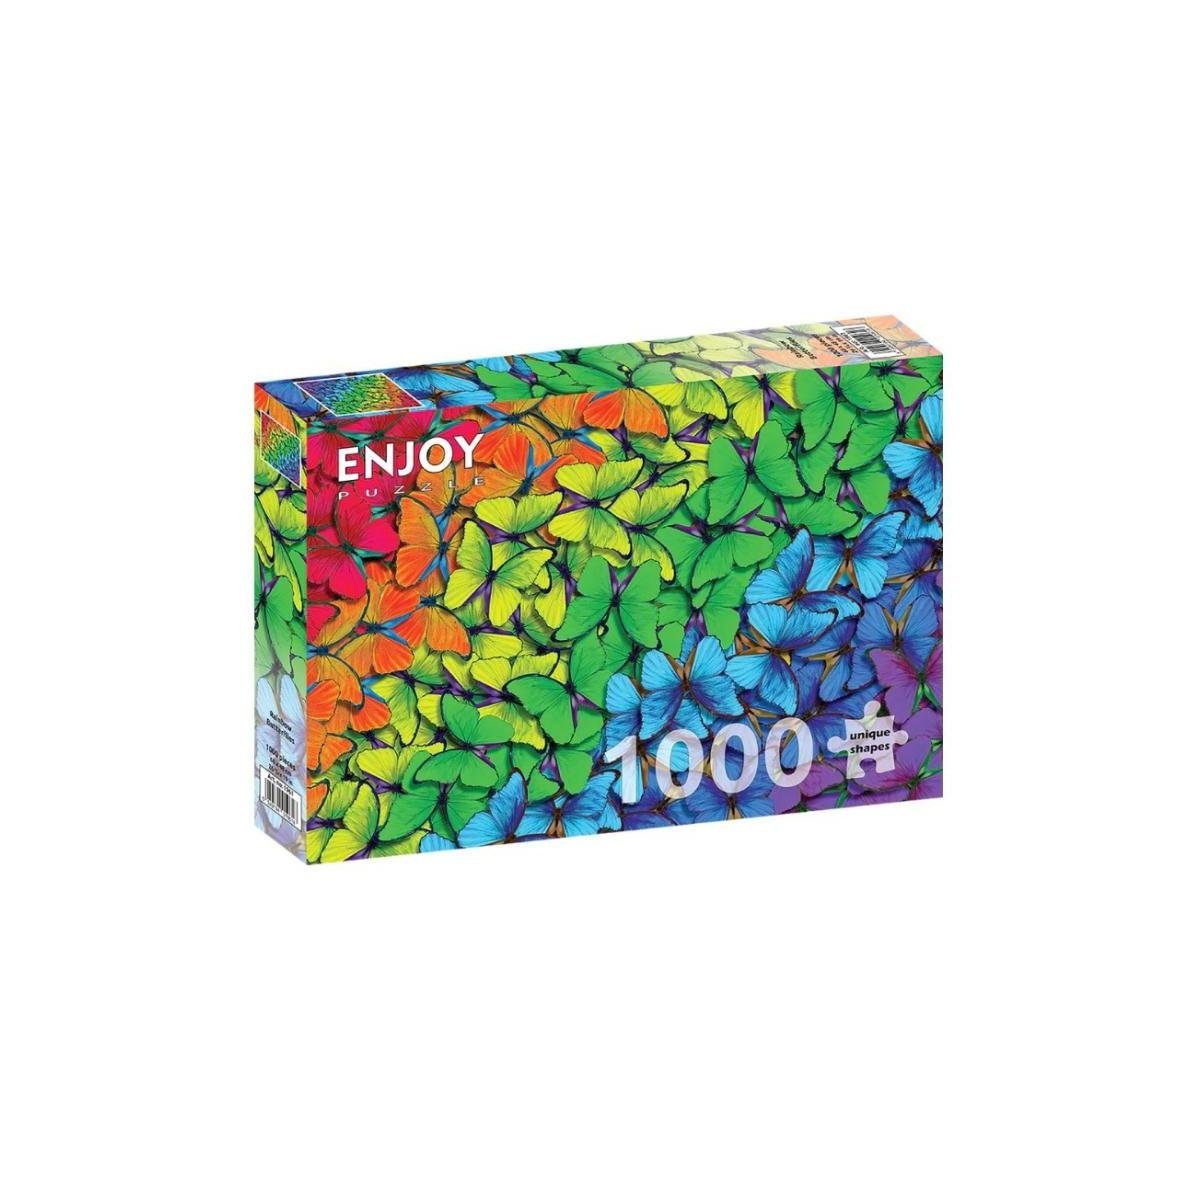 ENJOY Puzzle Puzzle ENJOY-1961 - Regenbogen-Schmetterlinge, Puzzle, 1000 Teile, 1000 Puzzleteile